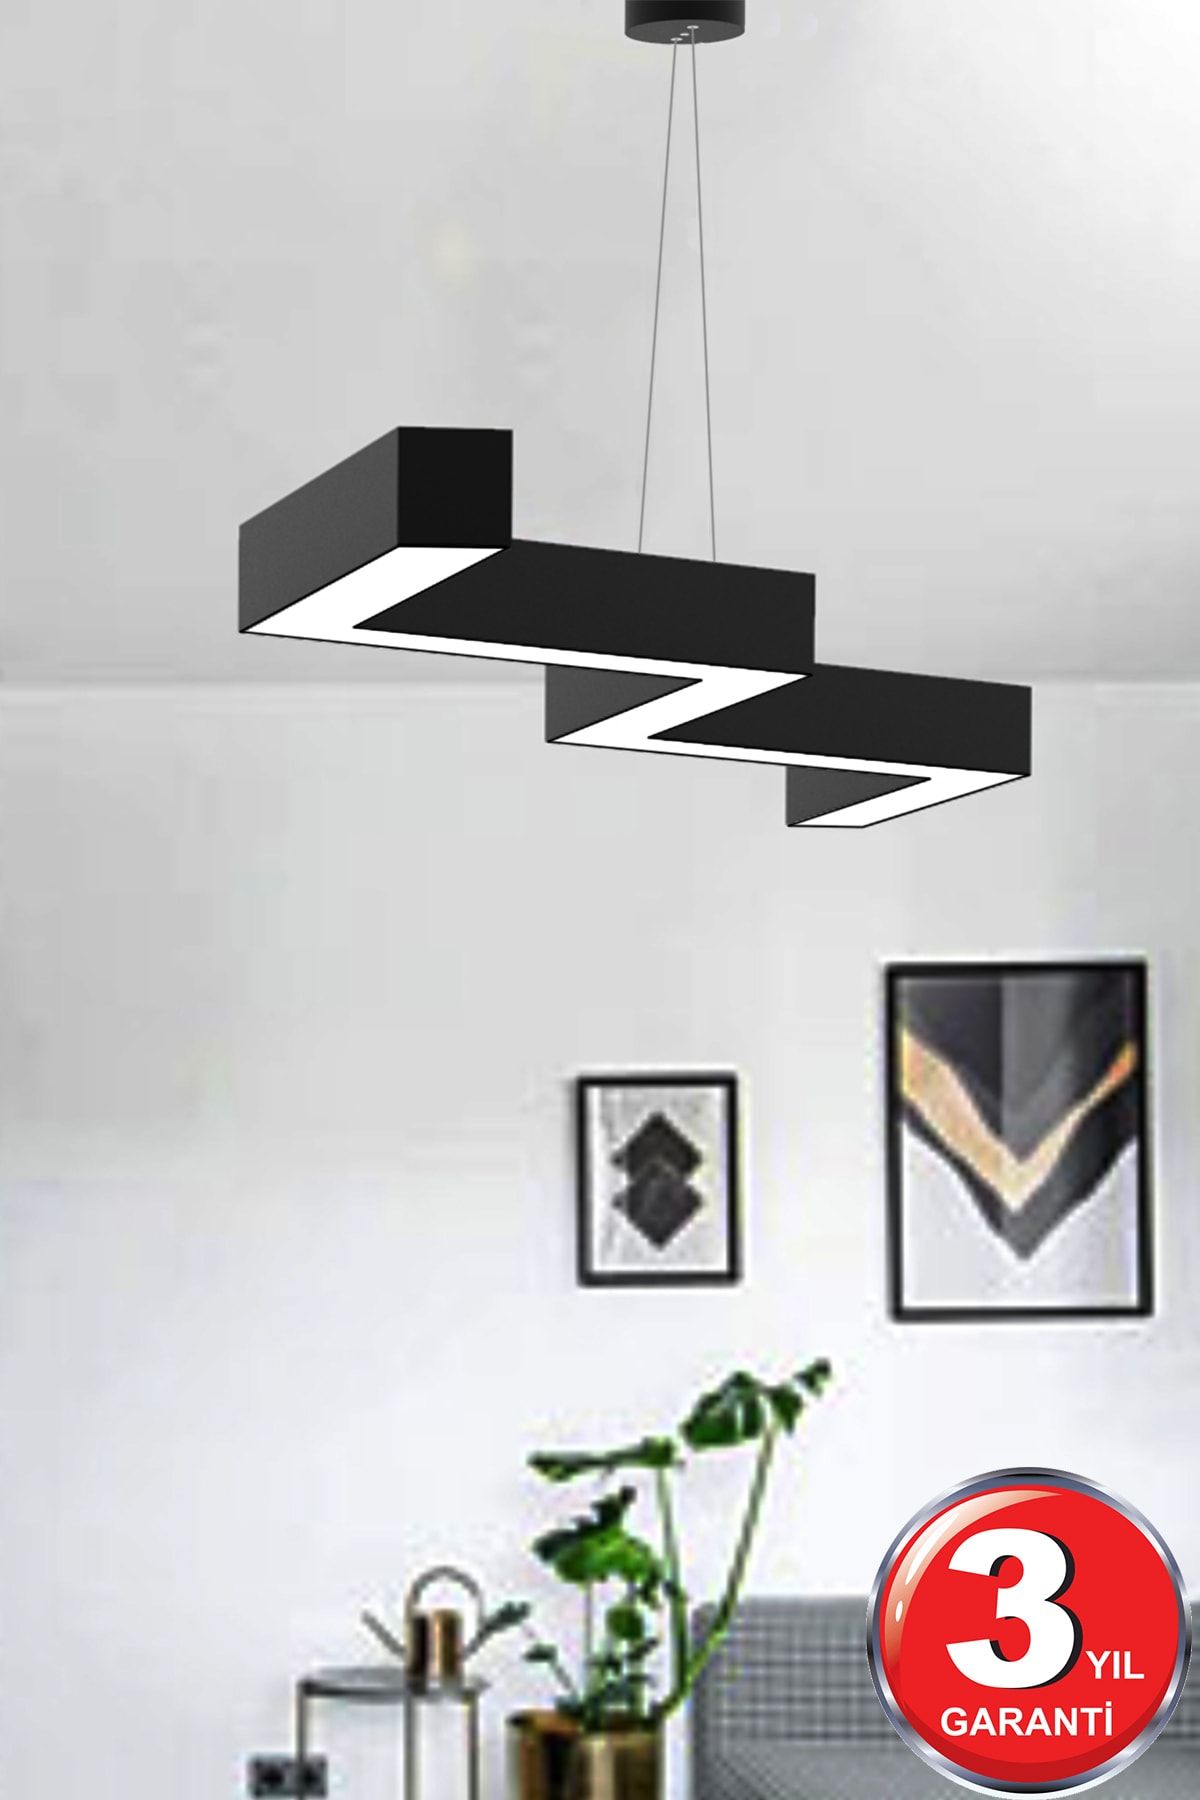 Hegza Lighting Zigzag ( Siyah Kasa, Gün Işığı ) Ledli Modern Led Avize, Salon, Mutfak, Oturma Yatak Odası, Sarkıt